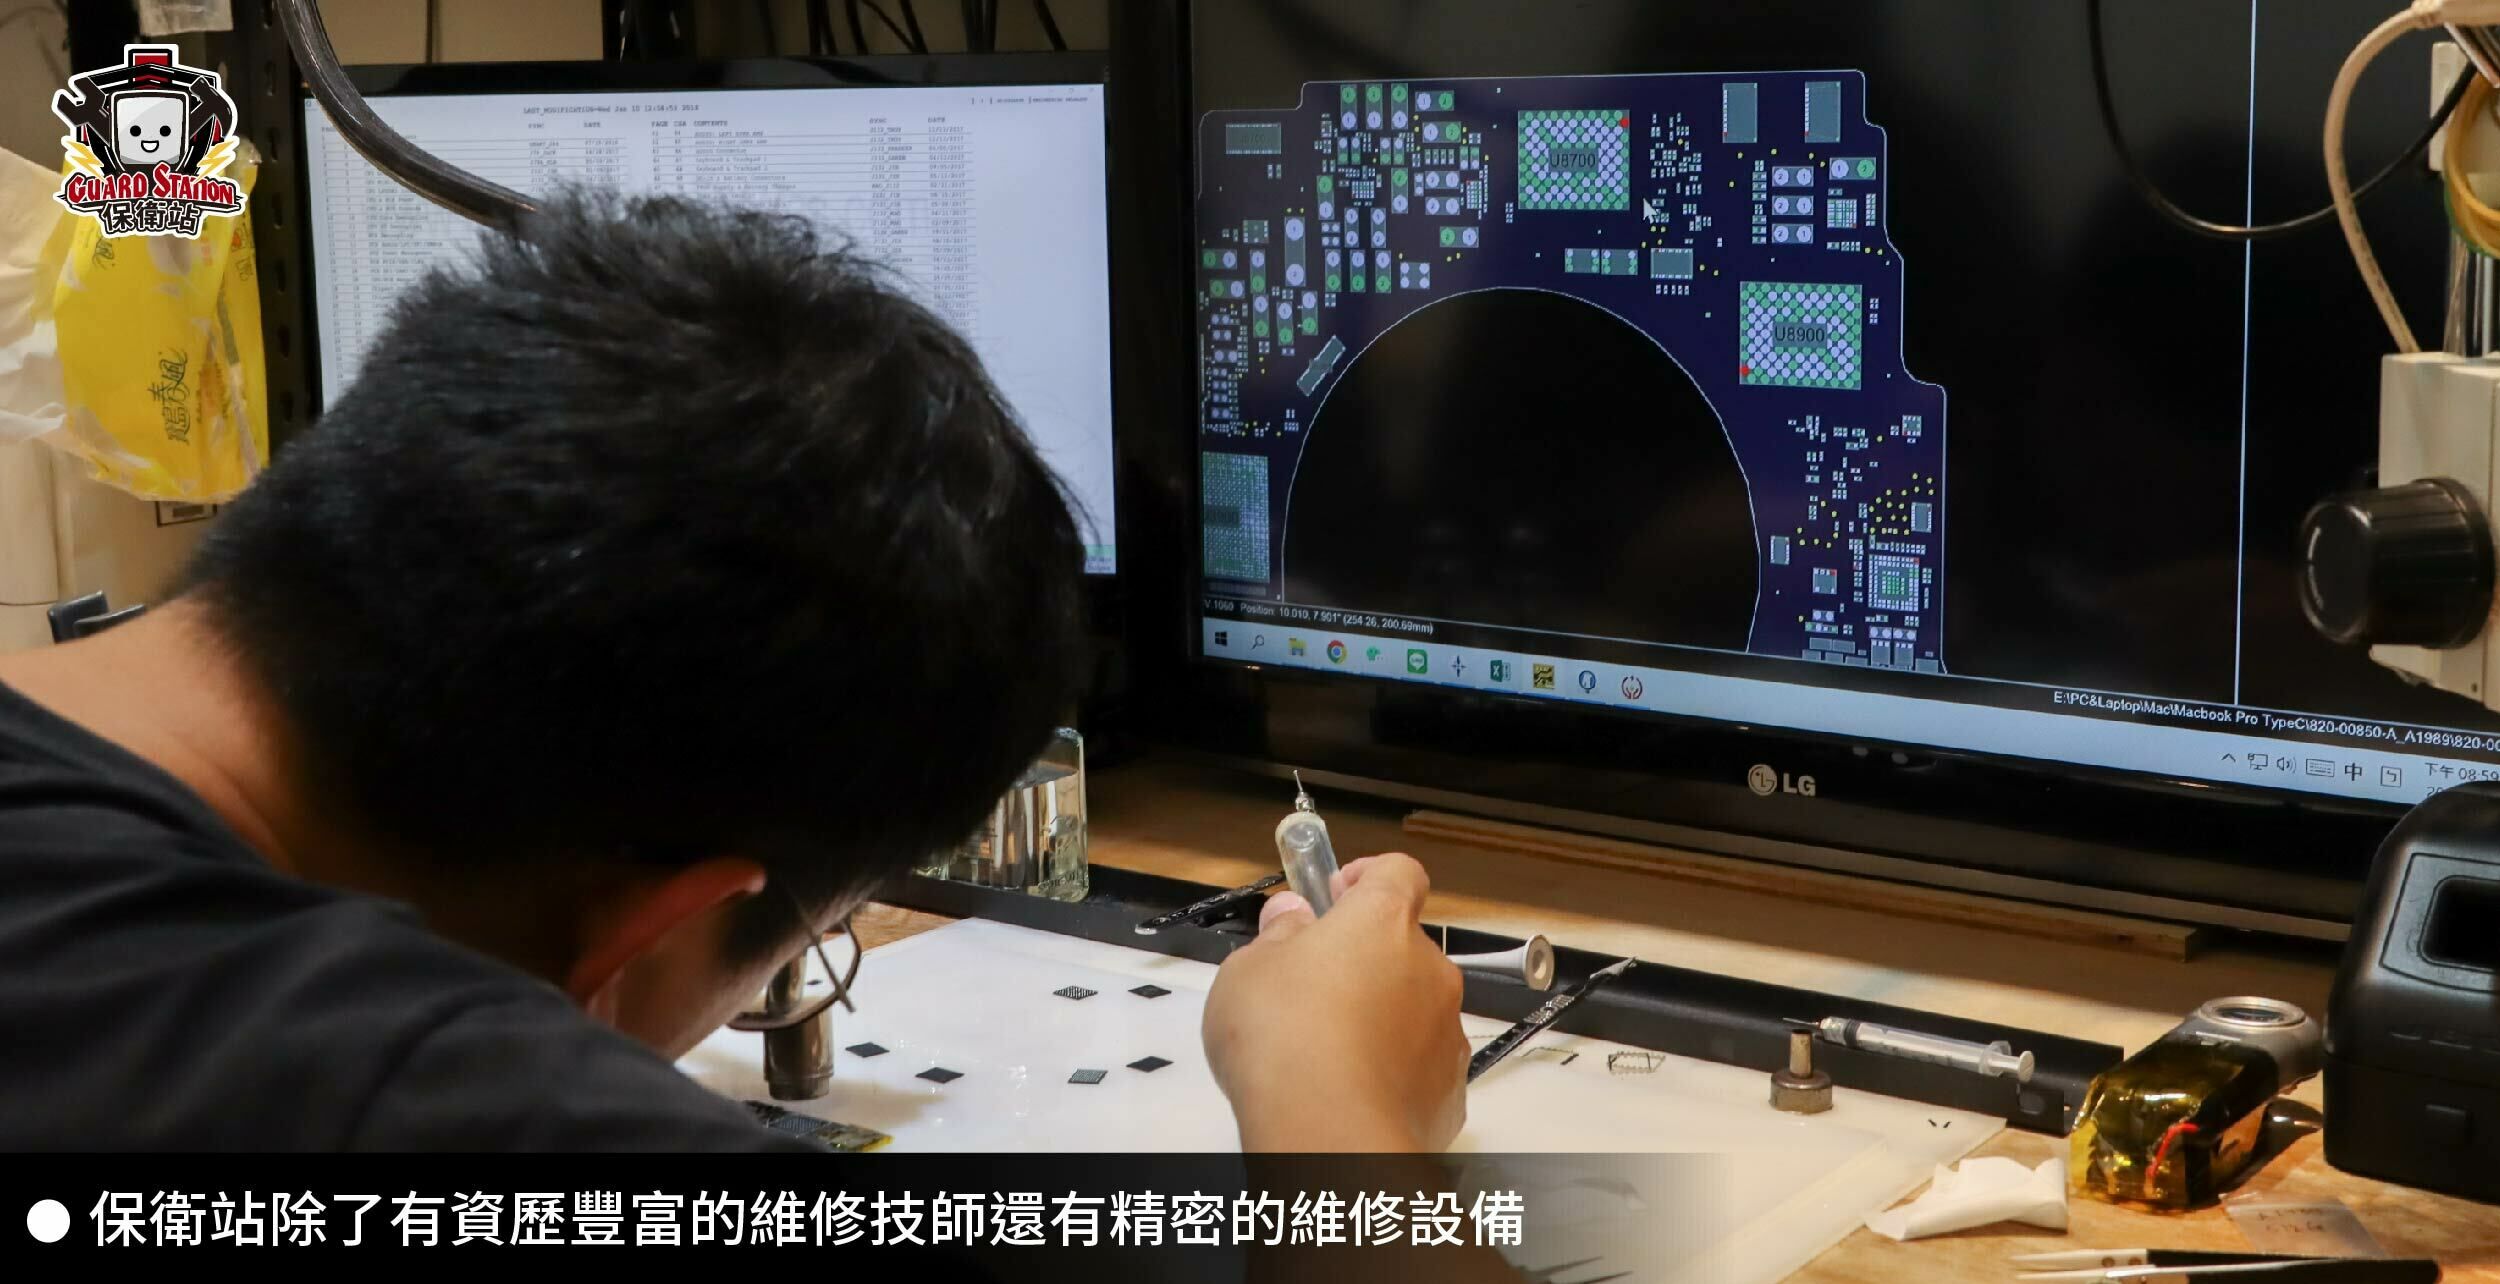 保衛站有資歷豐富的Macbook主機板維修技師專業於筆電擴充硬碟